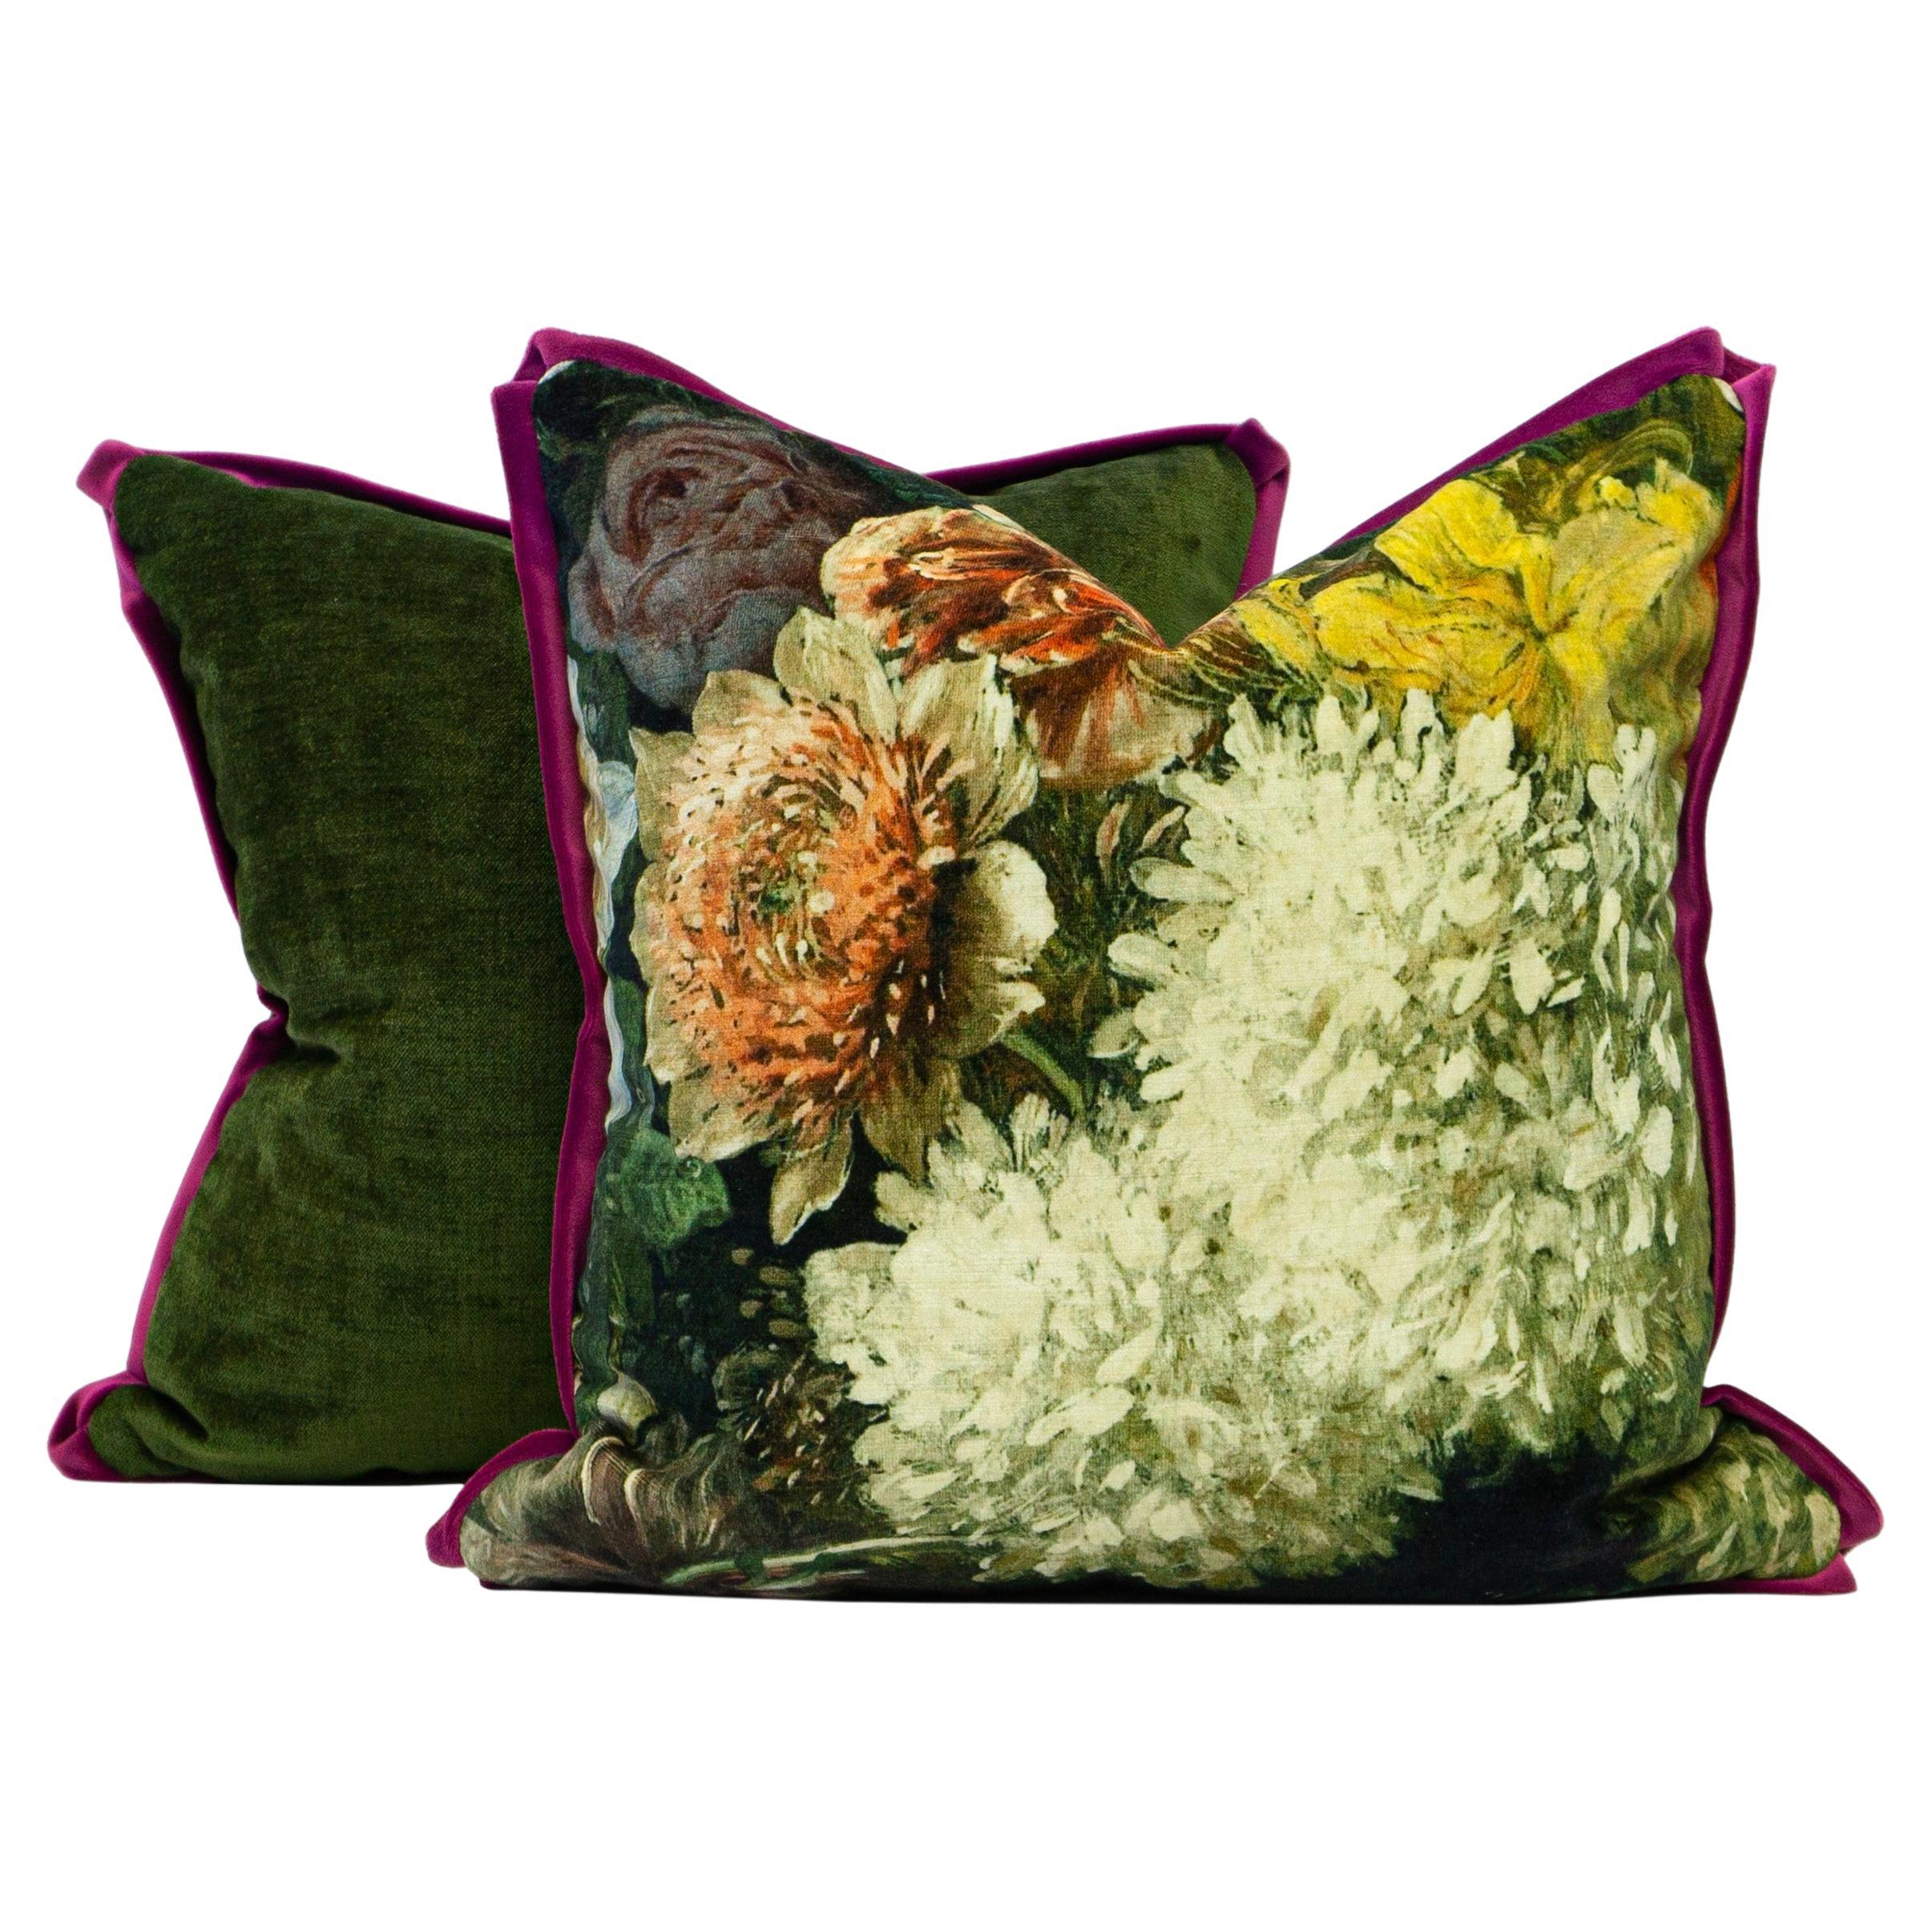 Quadratische Kissen mit Blumenmuster in Dunkelgrün und lila Samtbesatz